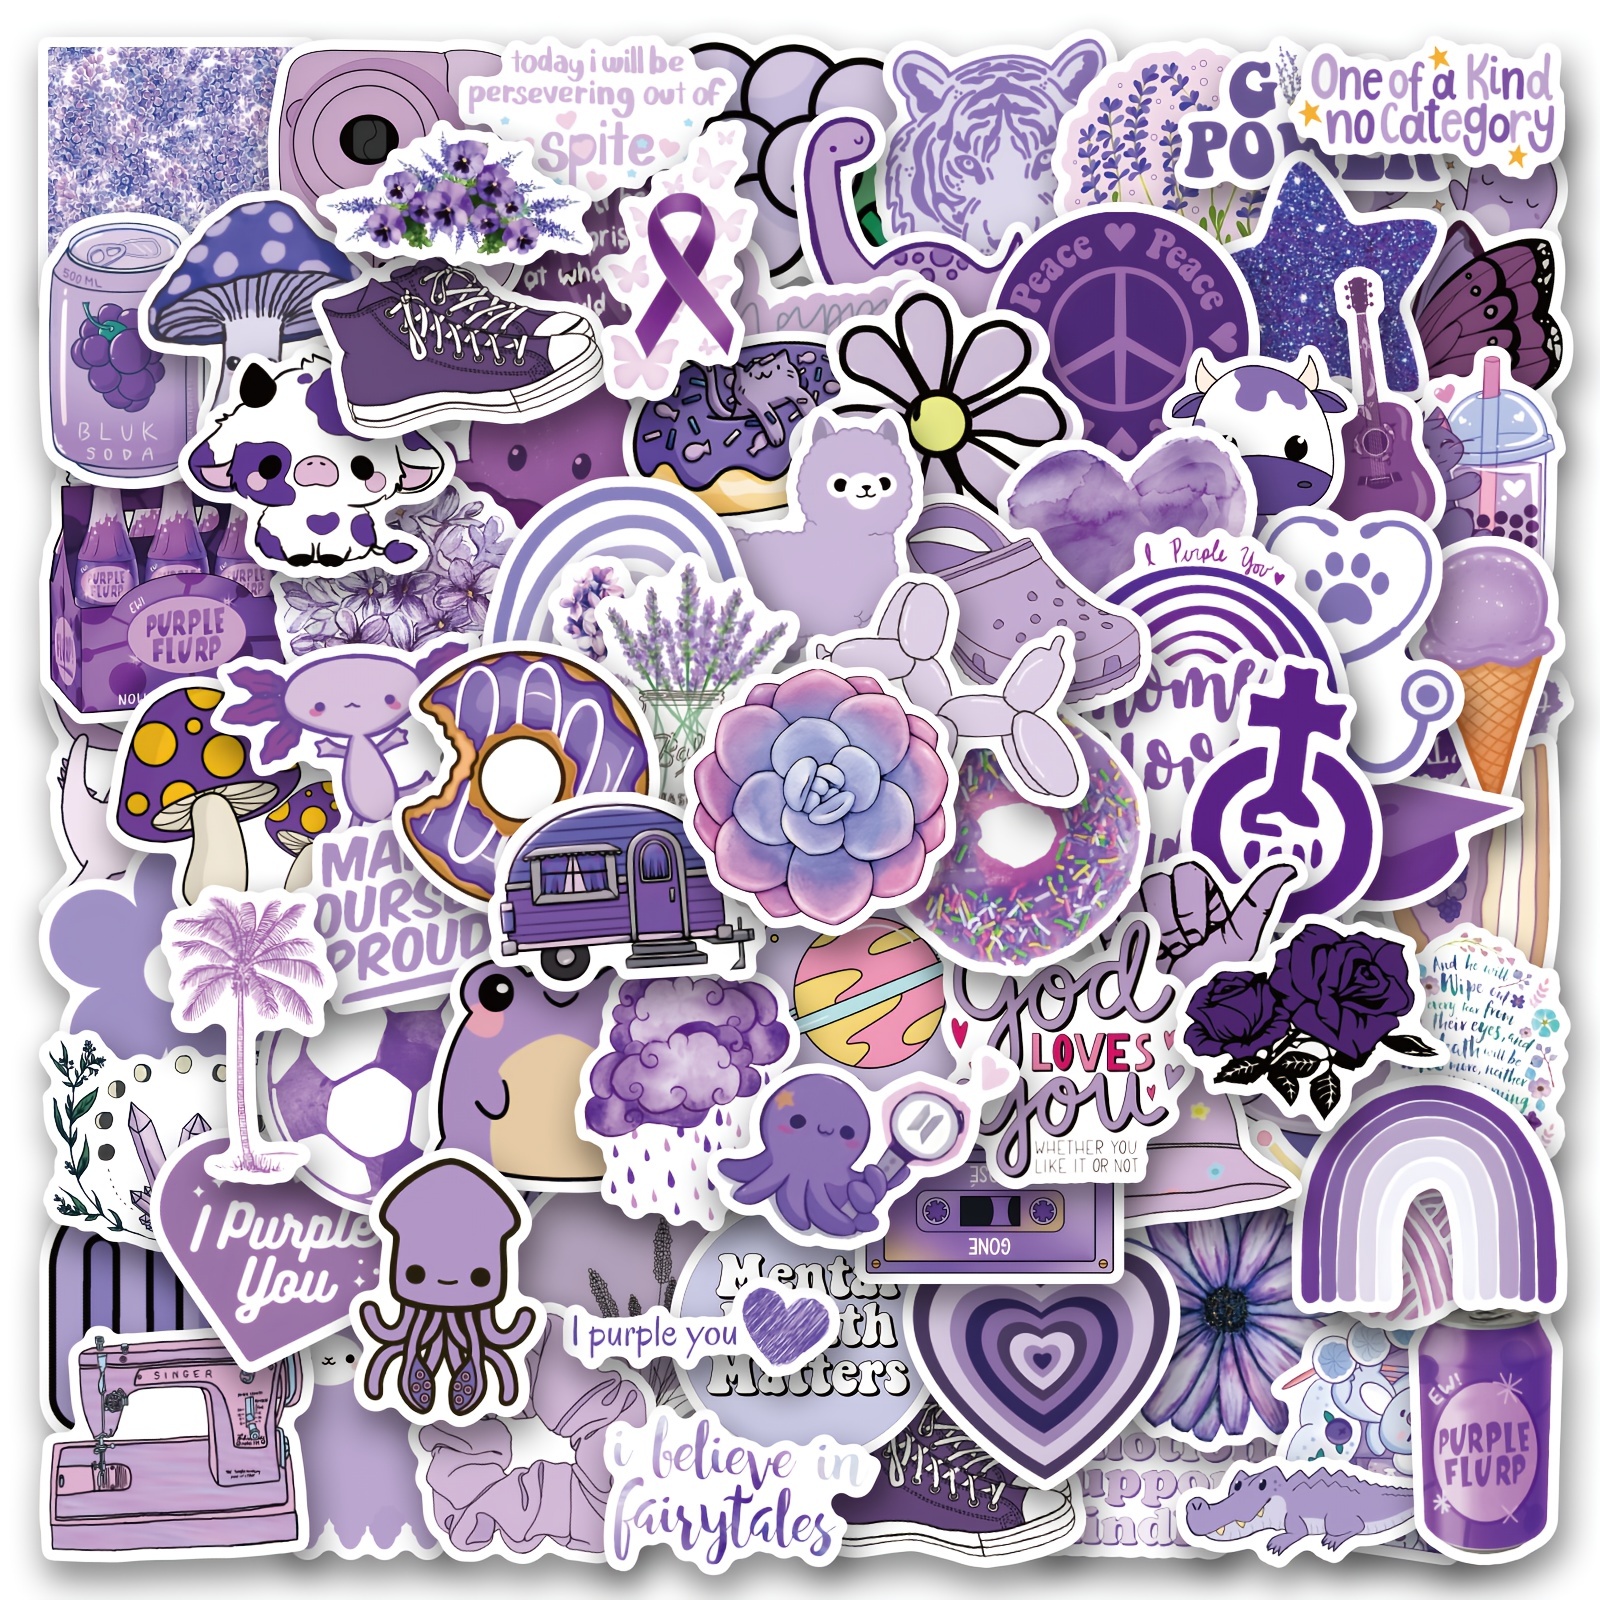 Purple Butterfly Sticker, Butterfly Sticker, Purple Aesthetic, Butterfly  Vinyl Sticker, Trendy Cute Stickers, Water Resistant Stickers